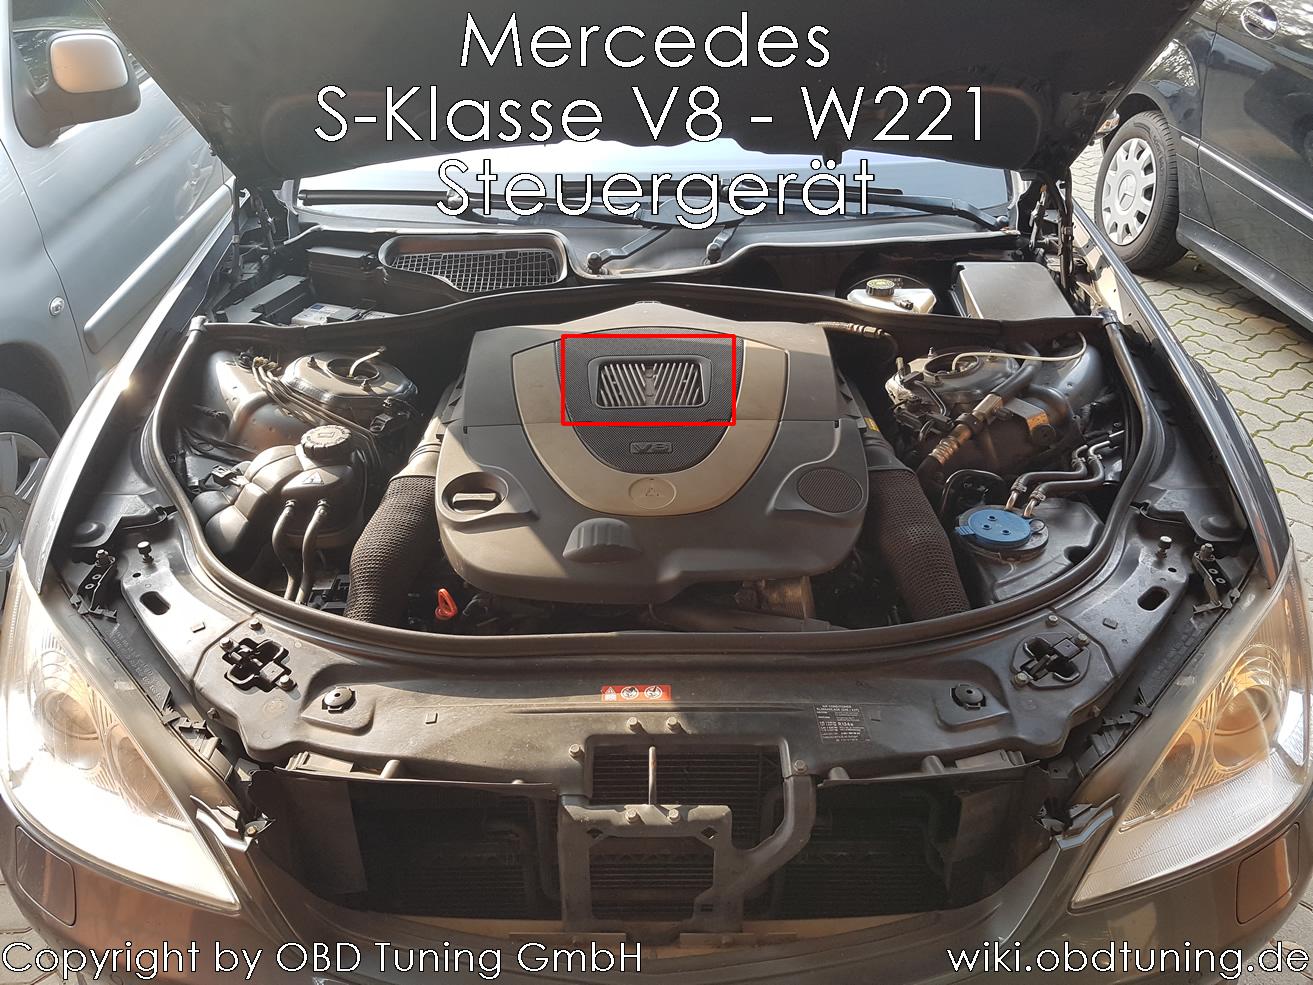 Datei:Mercedes S Klasse W221 V8 ECU.JPG